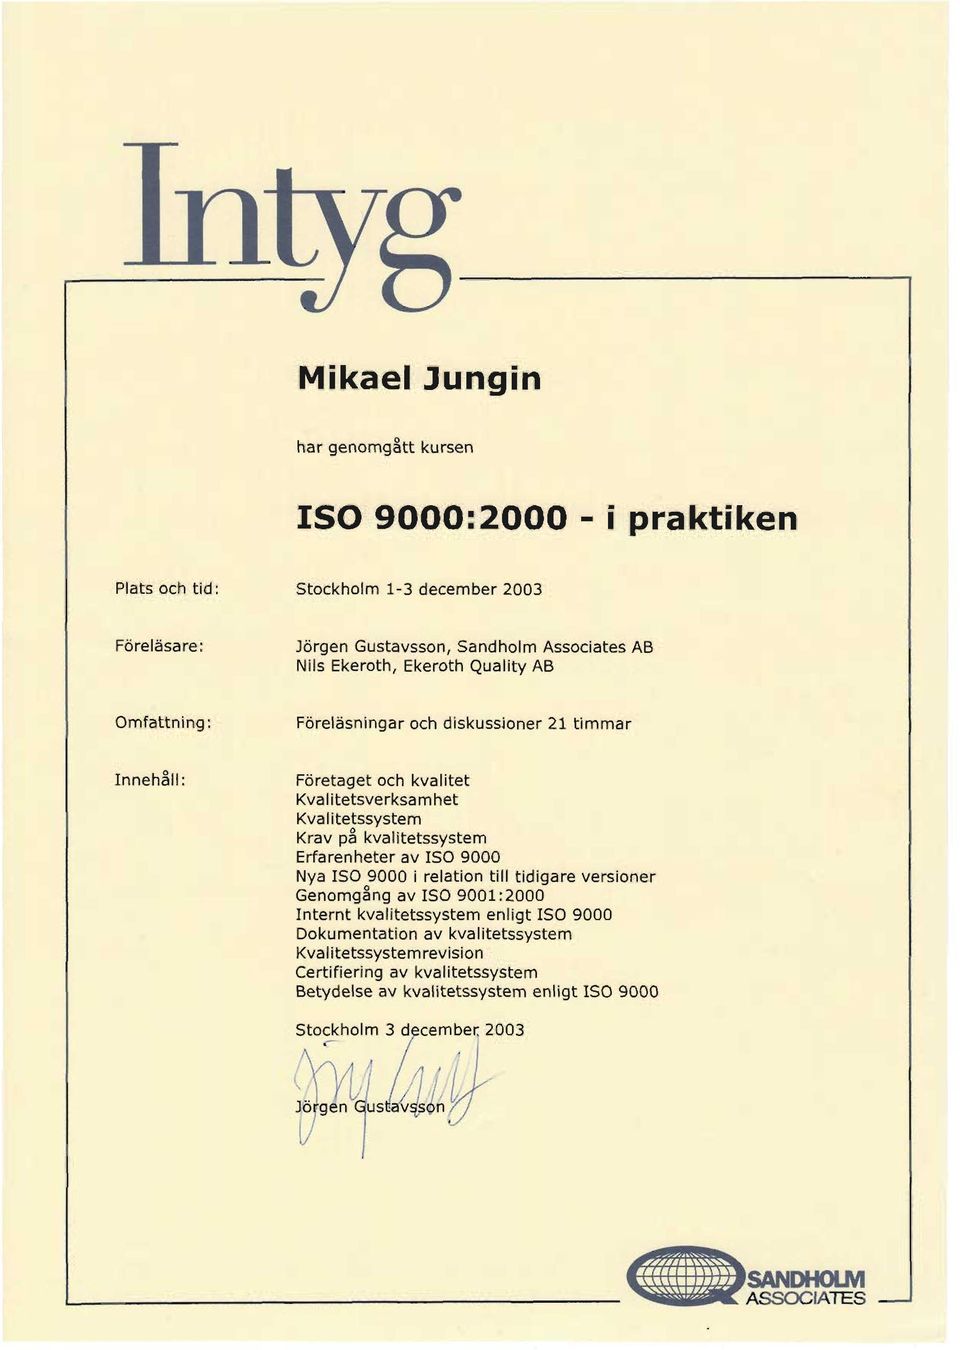 Krav på pa kvalitetssystem Erfarenheter av ISO 9000 Nya ISO 9000 i relation till tidigare versioner Genomgång Genomgang av ISO 9001:2000 Internt kvalitetssystem enligt ISO 9000 Dokumentation av